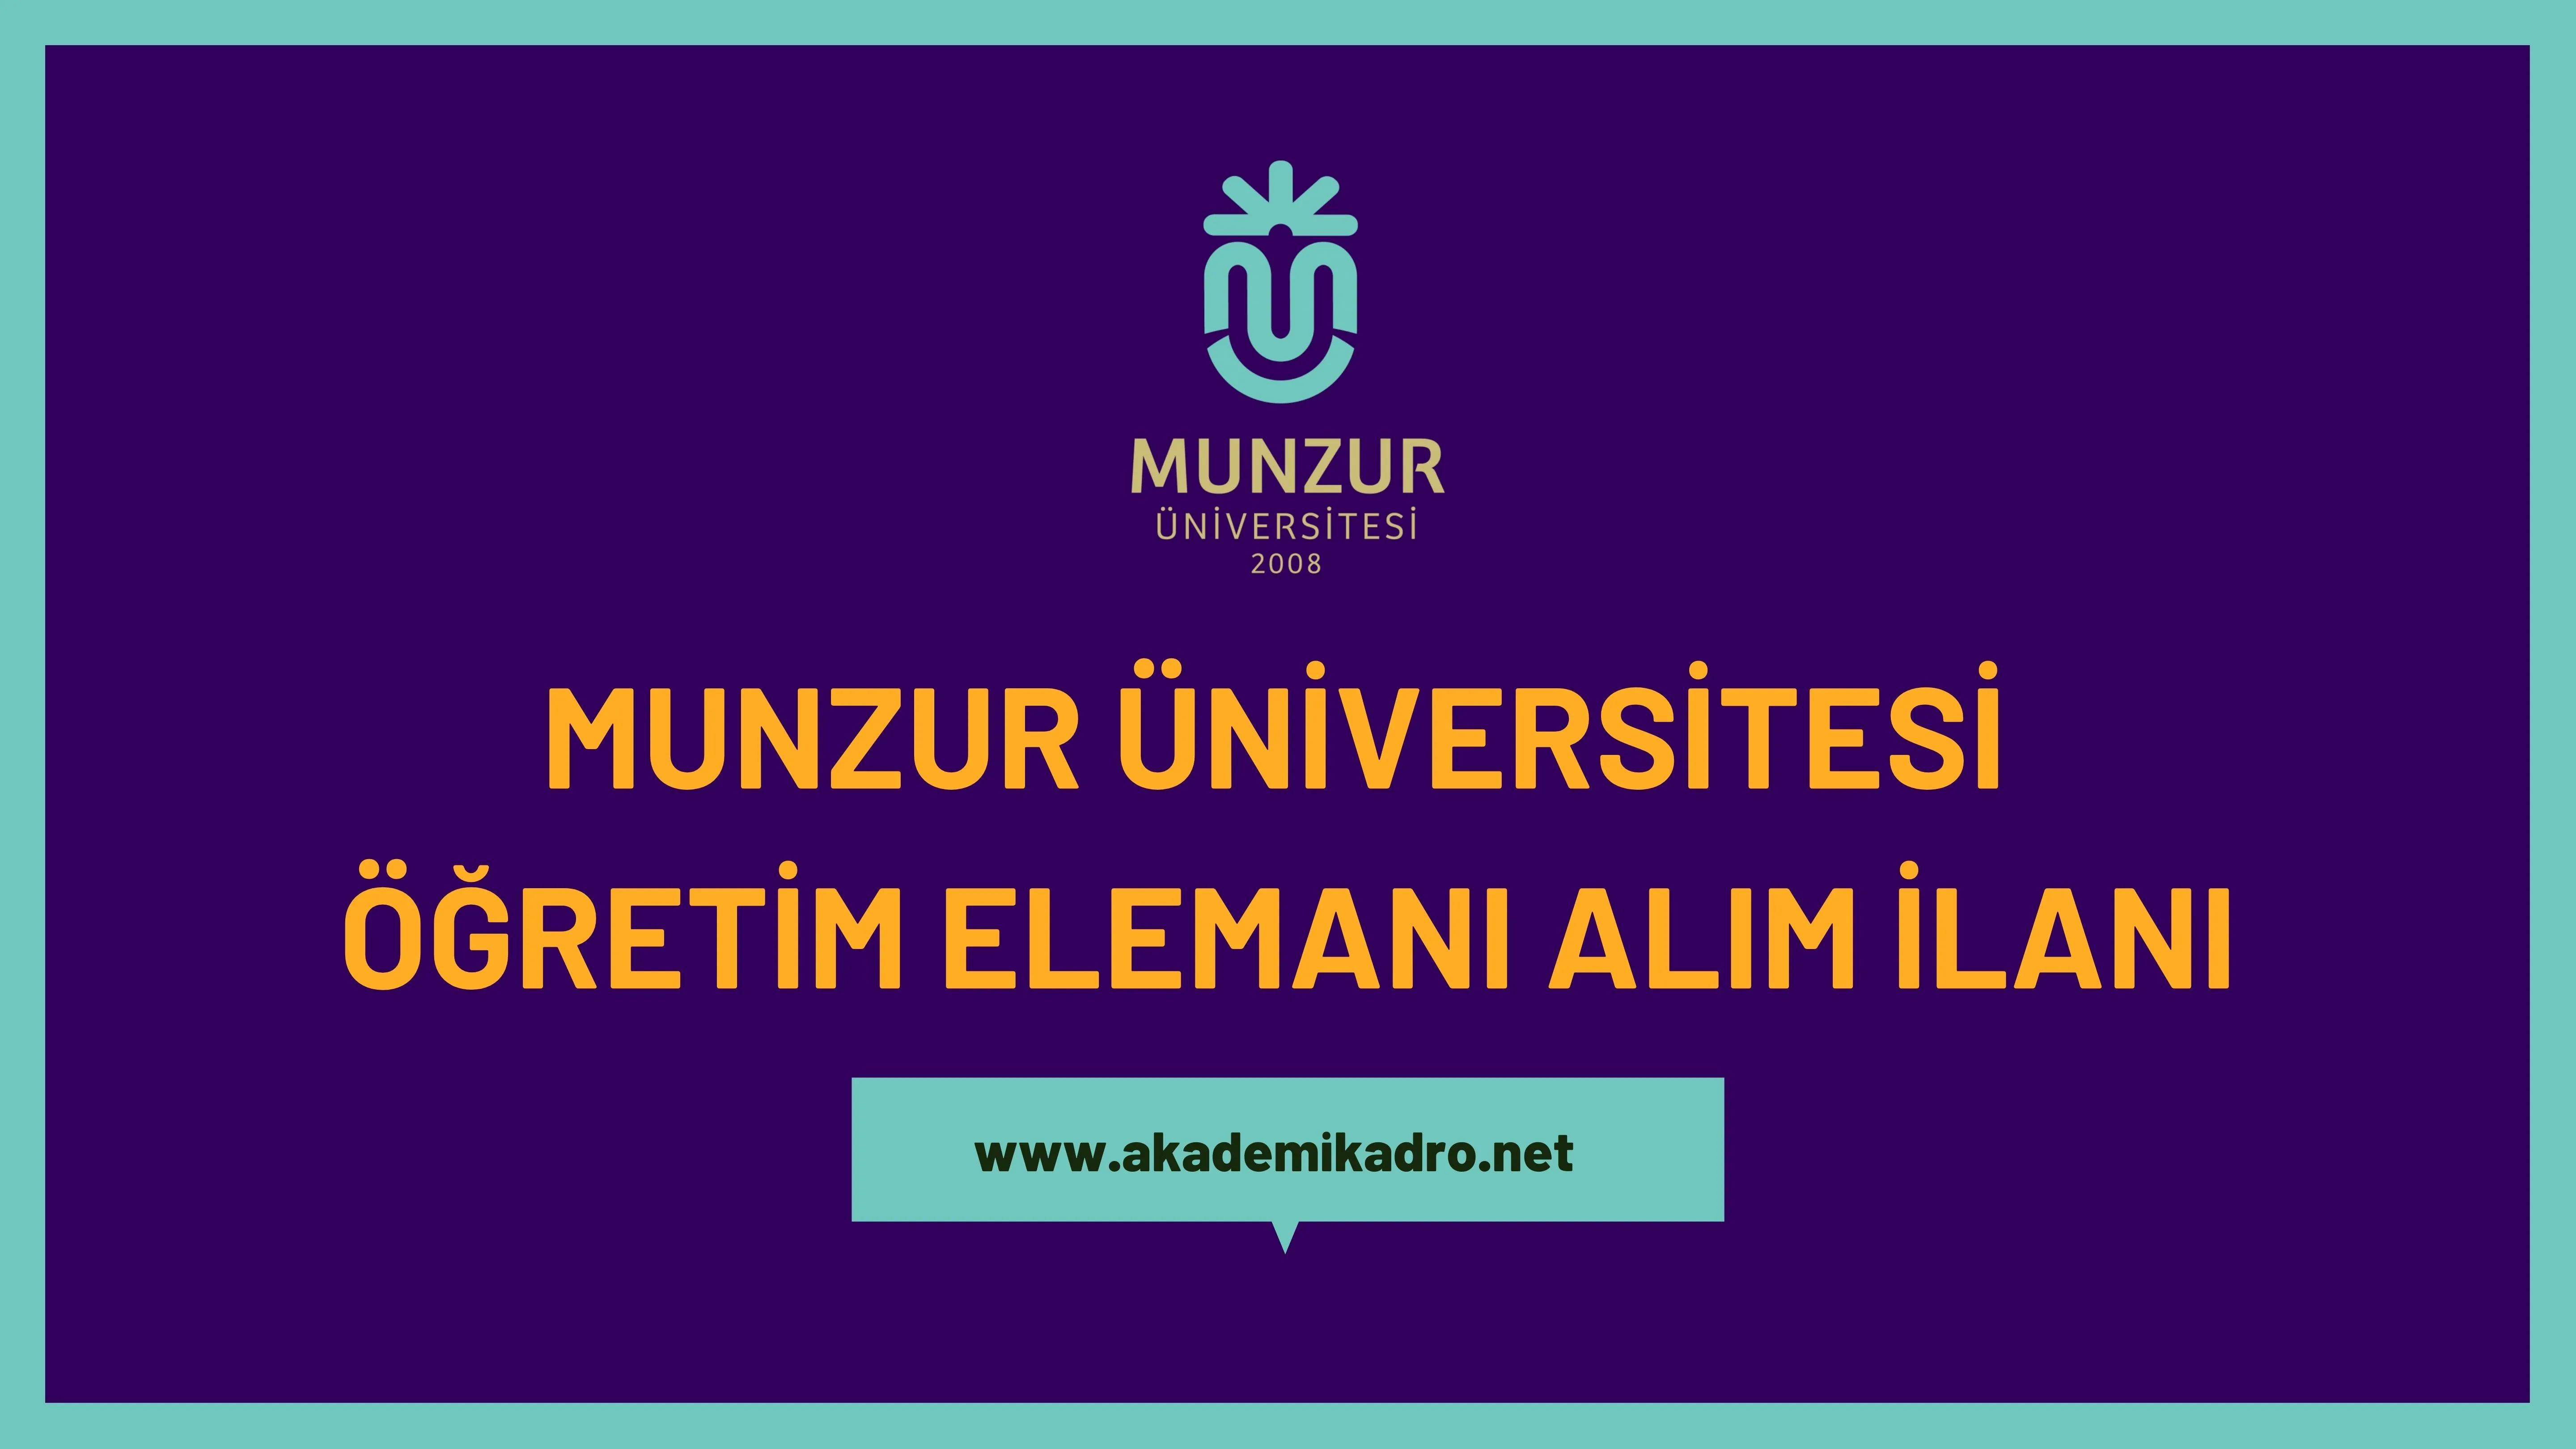 Munzur Üniversitesi 18 Öğretim üyesi, 3 öğretim görevlisi ve Araştırma görevlisi alacaktır. Son başvuru tarihi 20 Aralık 2022